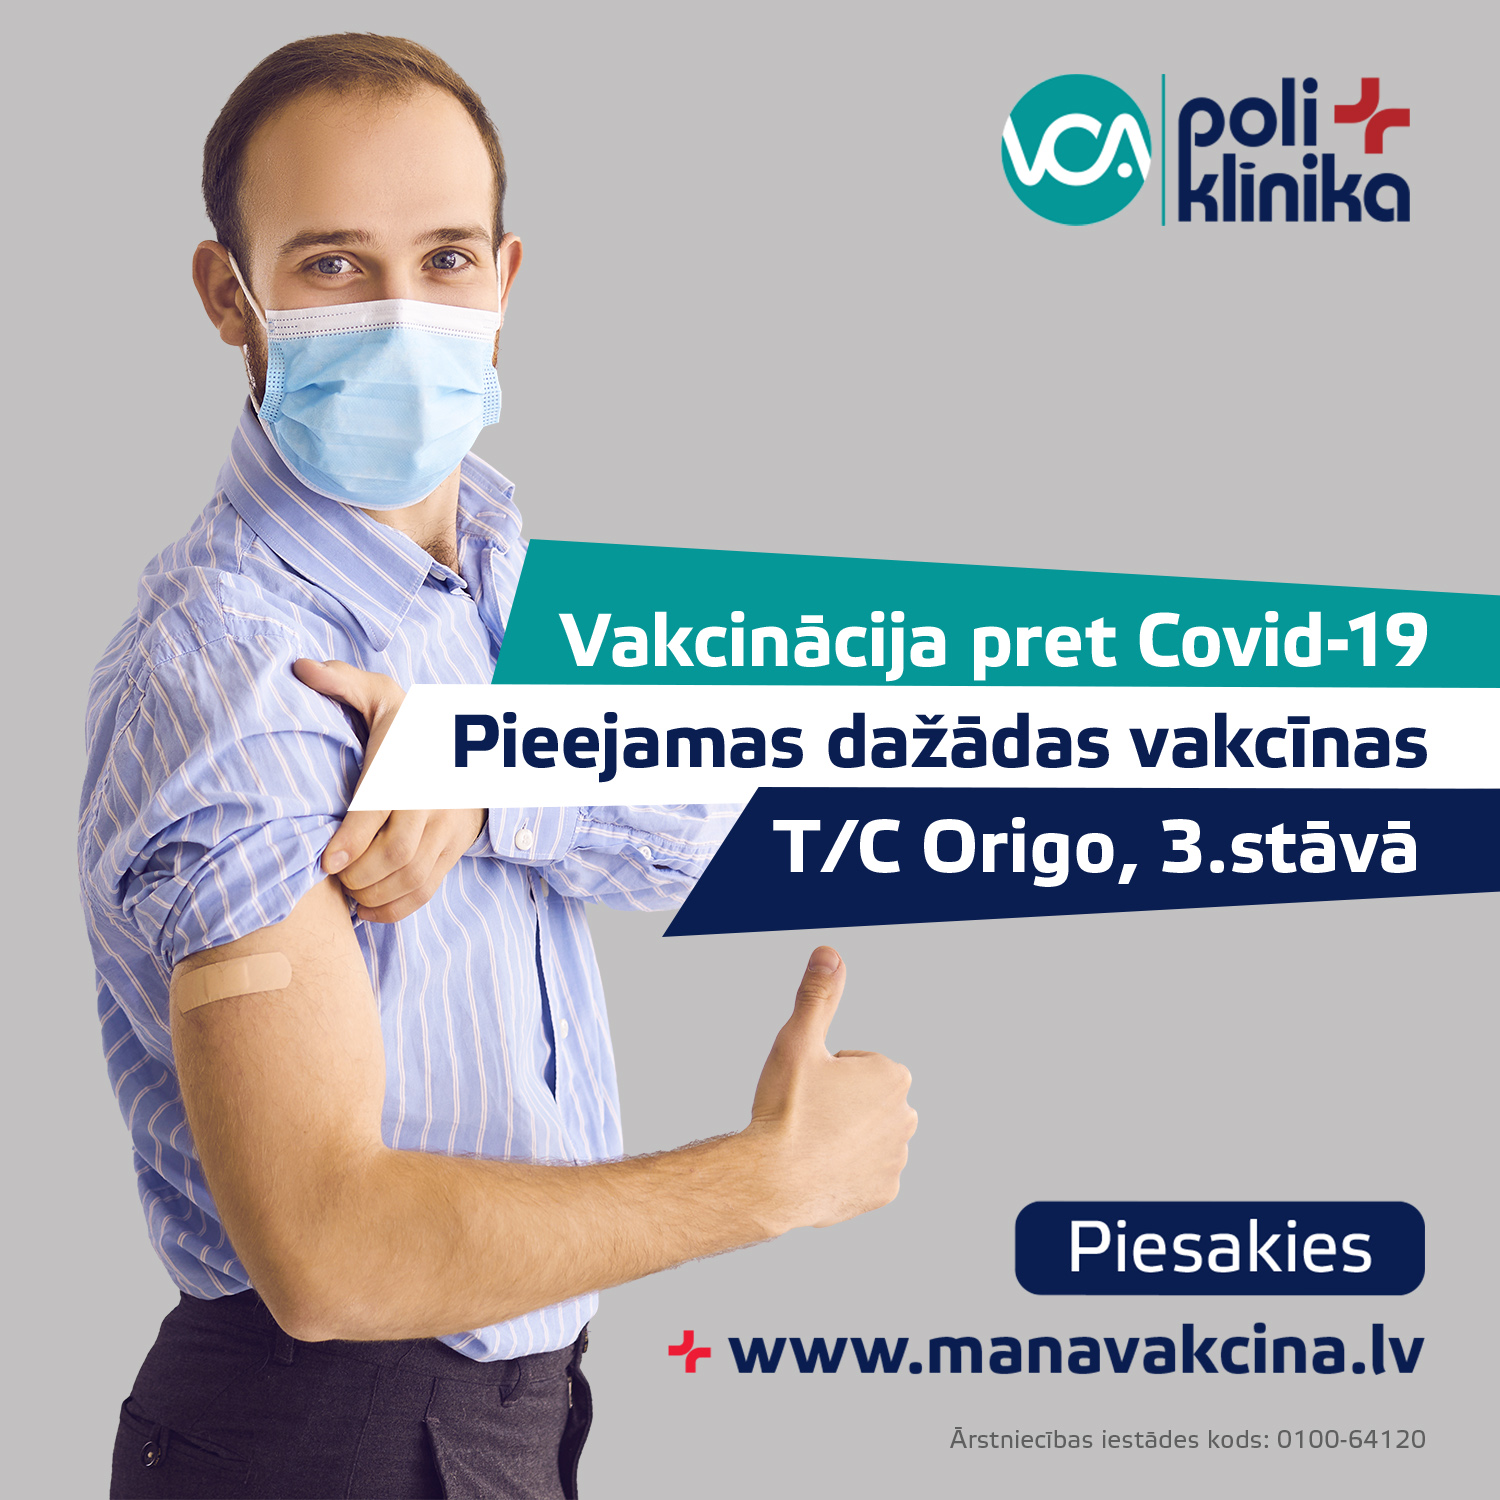 Vakcinācija pret Covid-19 T/C Origo, Rīgā